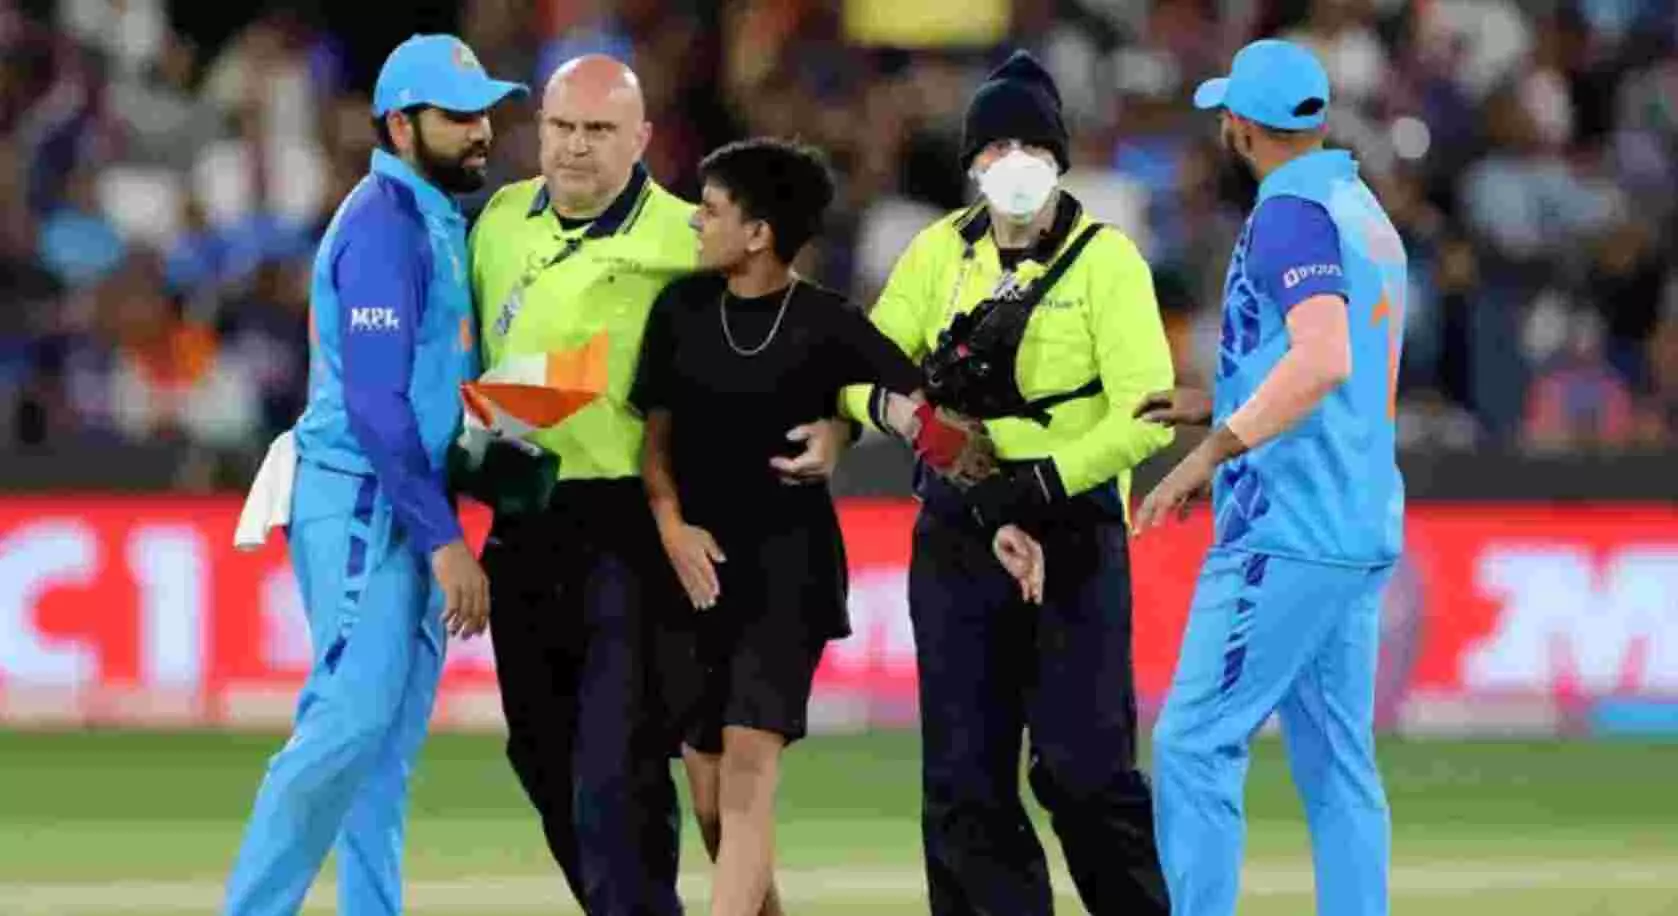 INDvsZIM : जब बीच मैच में स्टेडियम में घुस गया रोहित शर्मा का फैन - अब लगा लाखों का जुर्माना